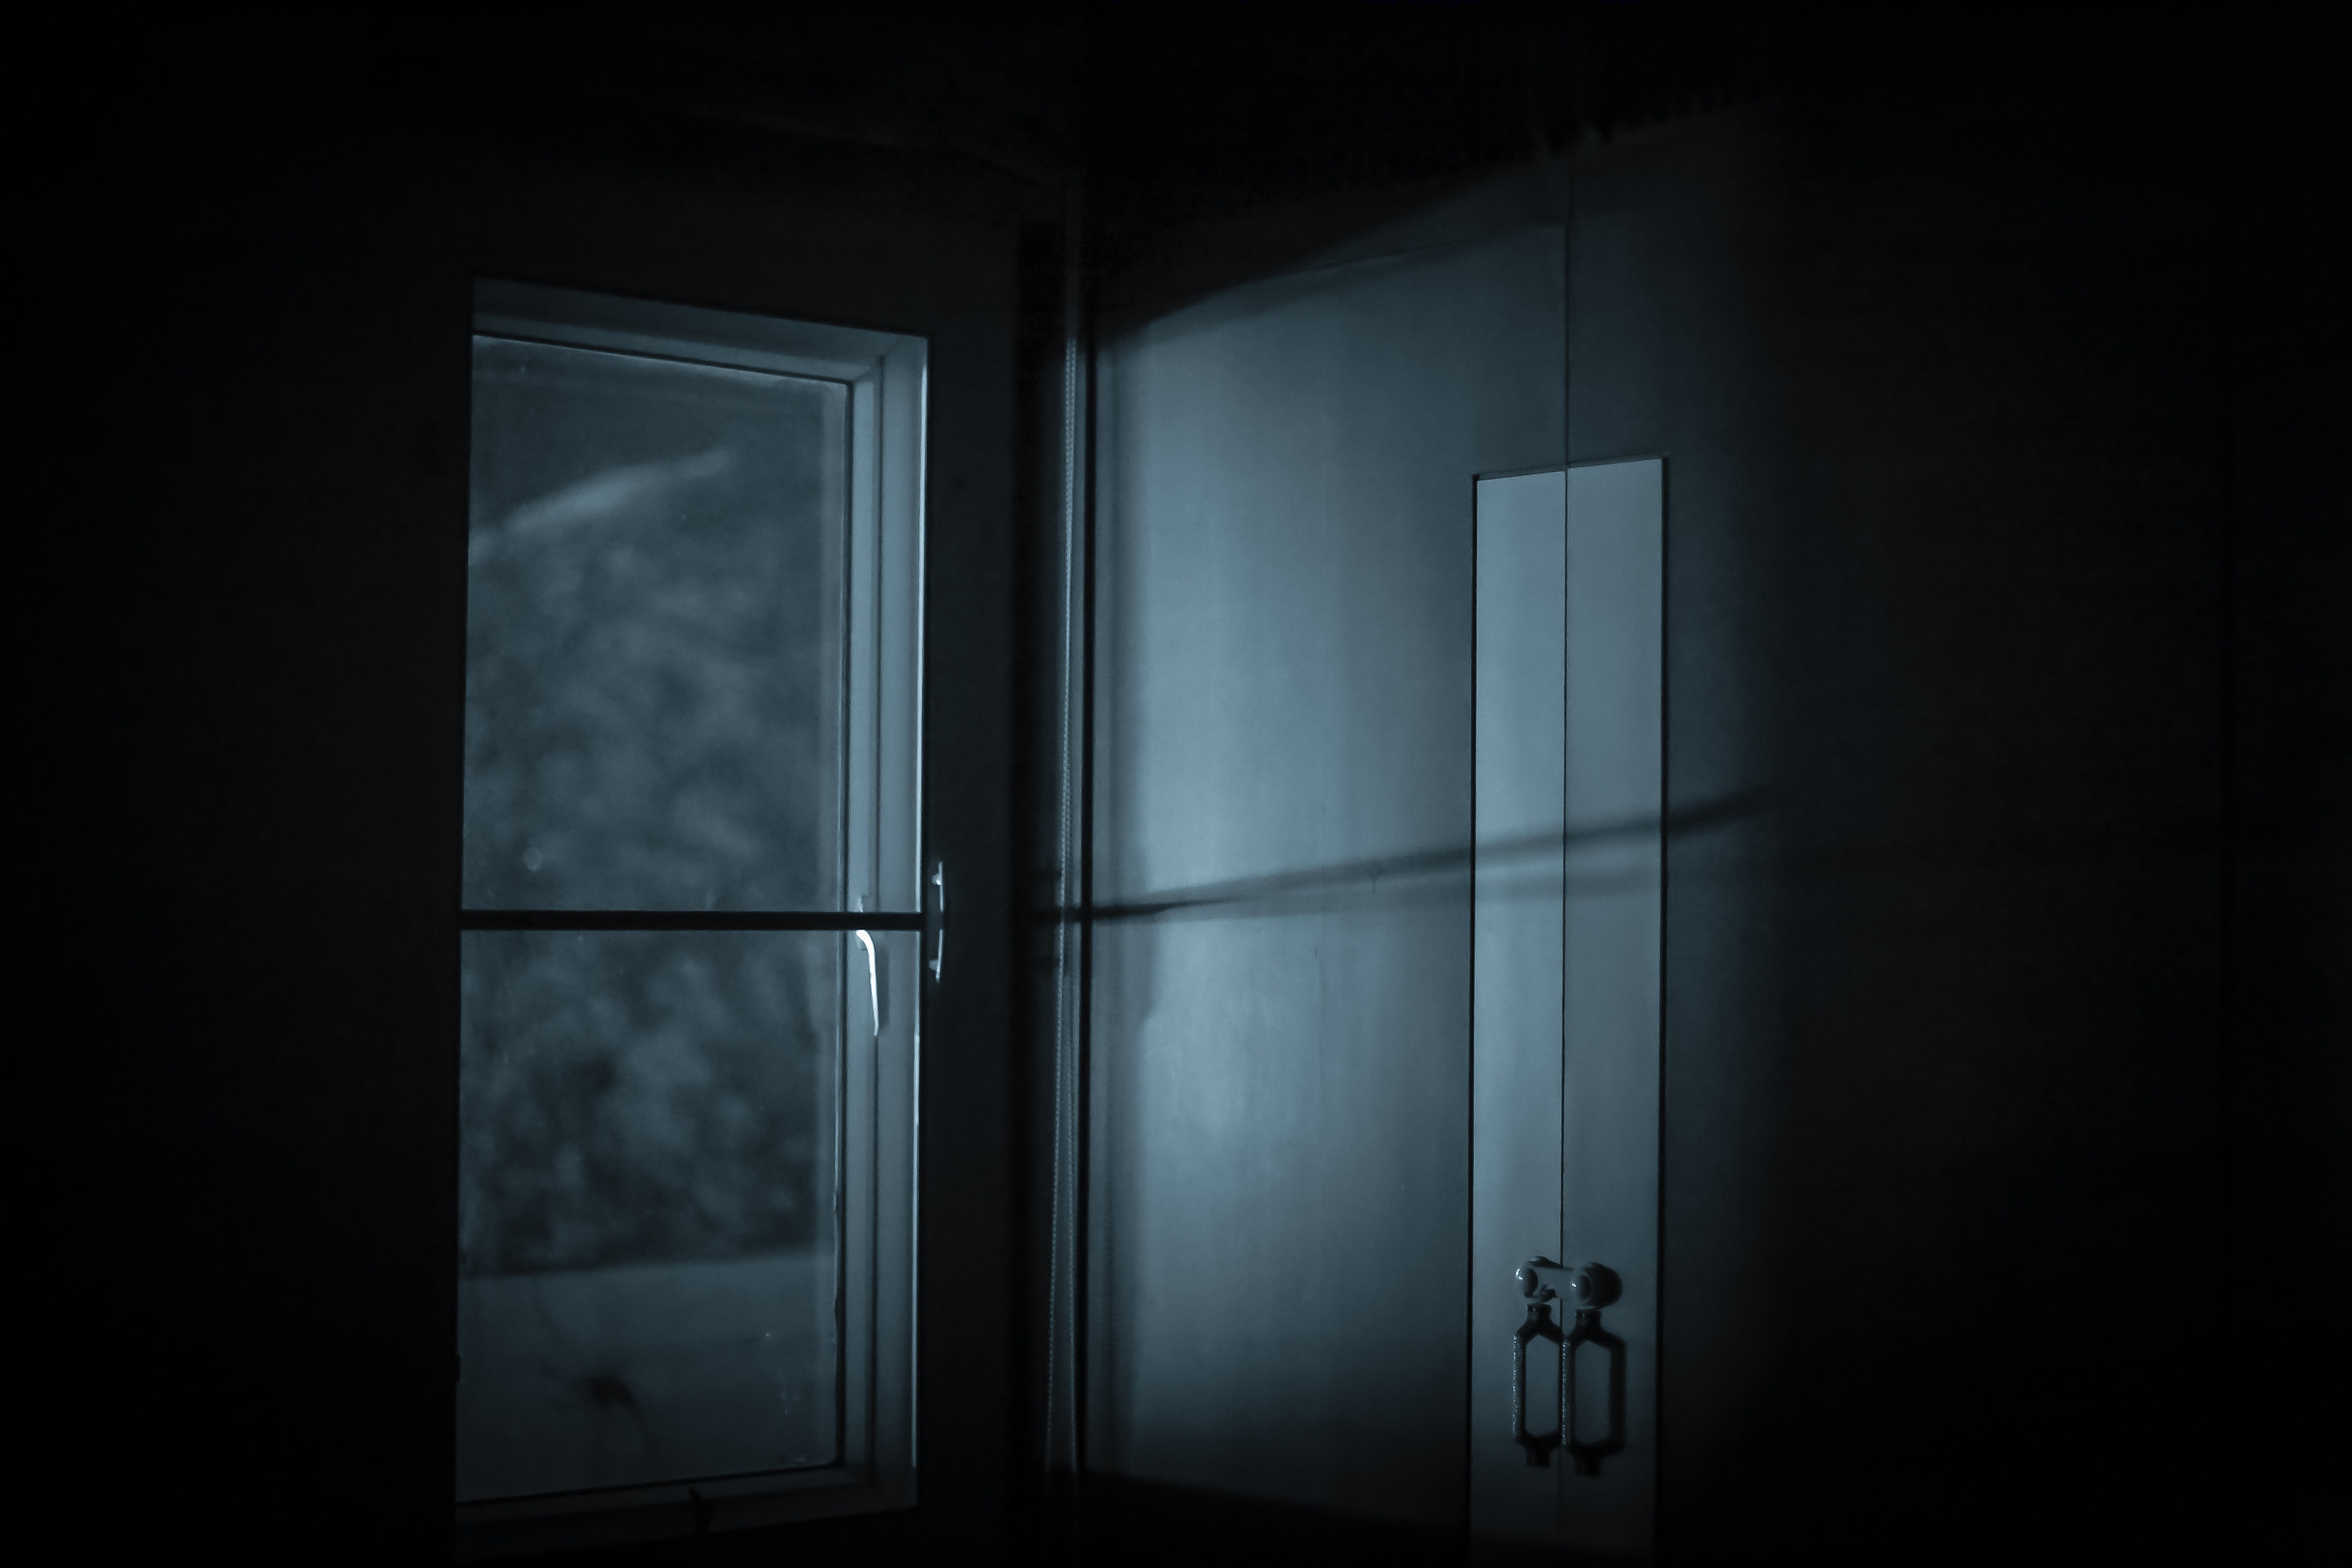 A door and window in the dark